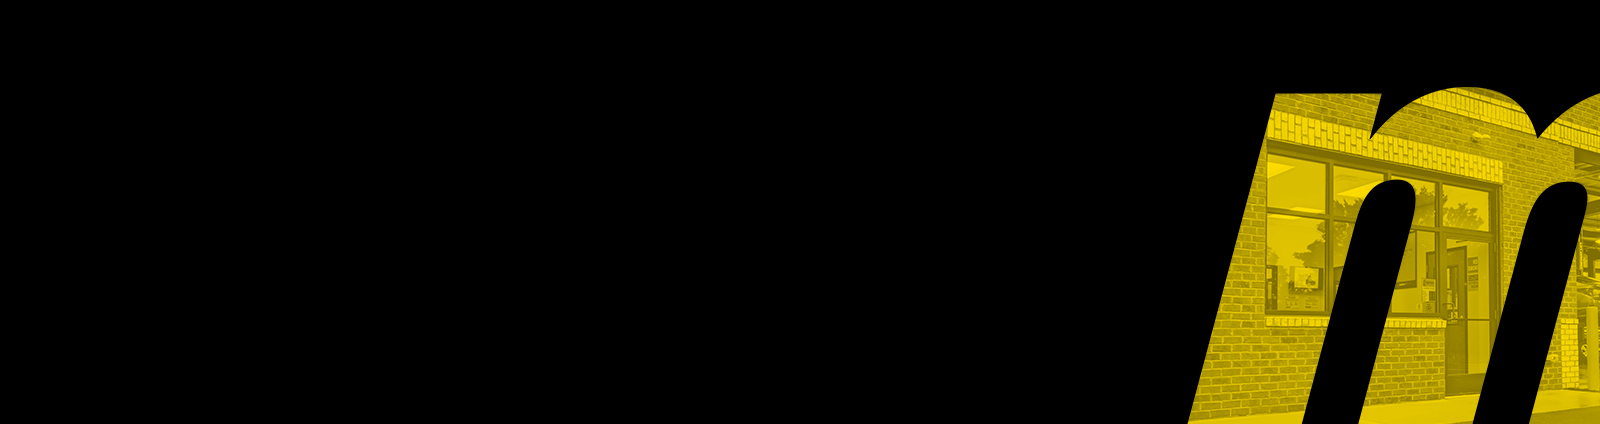 Meineke Logo - Meineke Franchise Resale Program